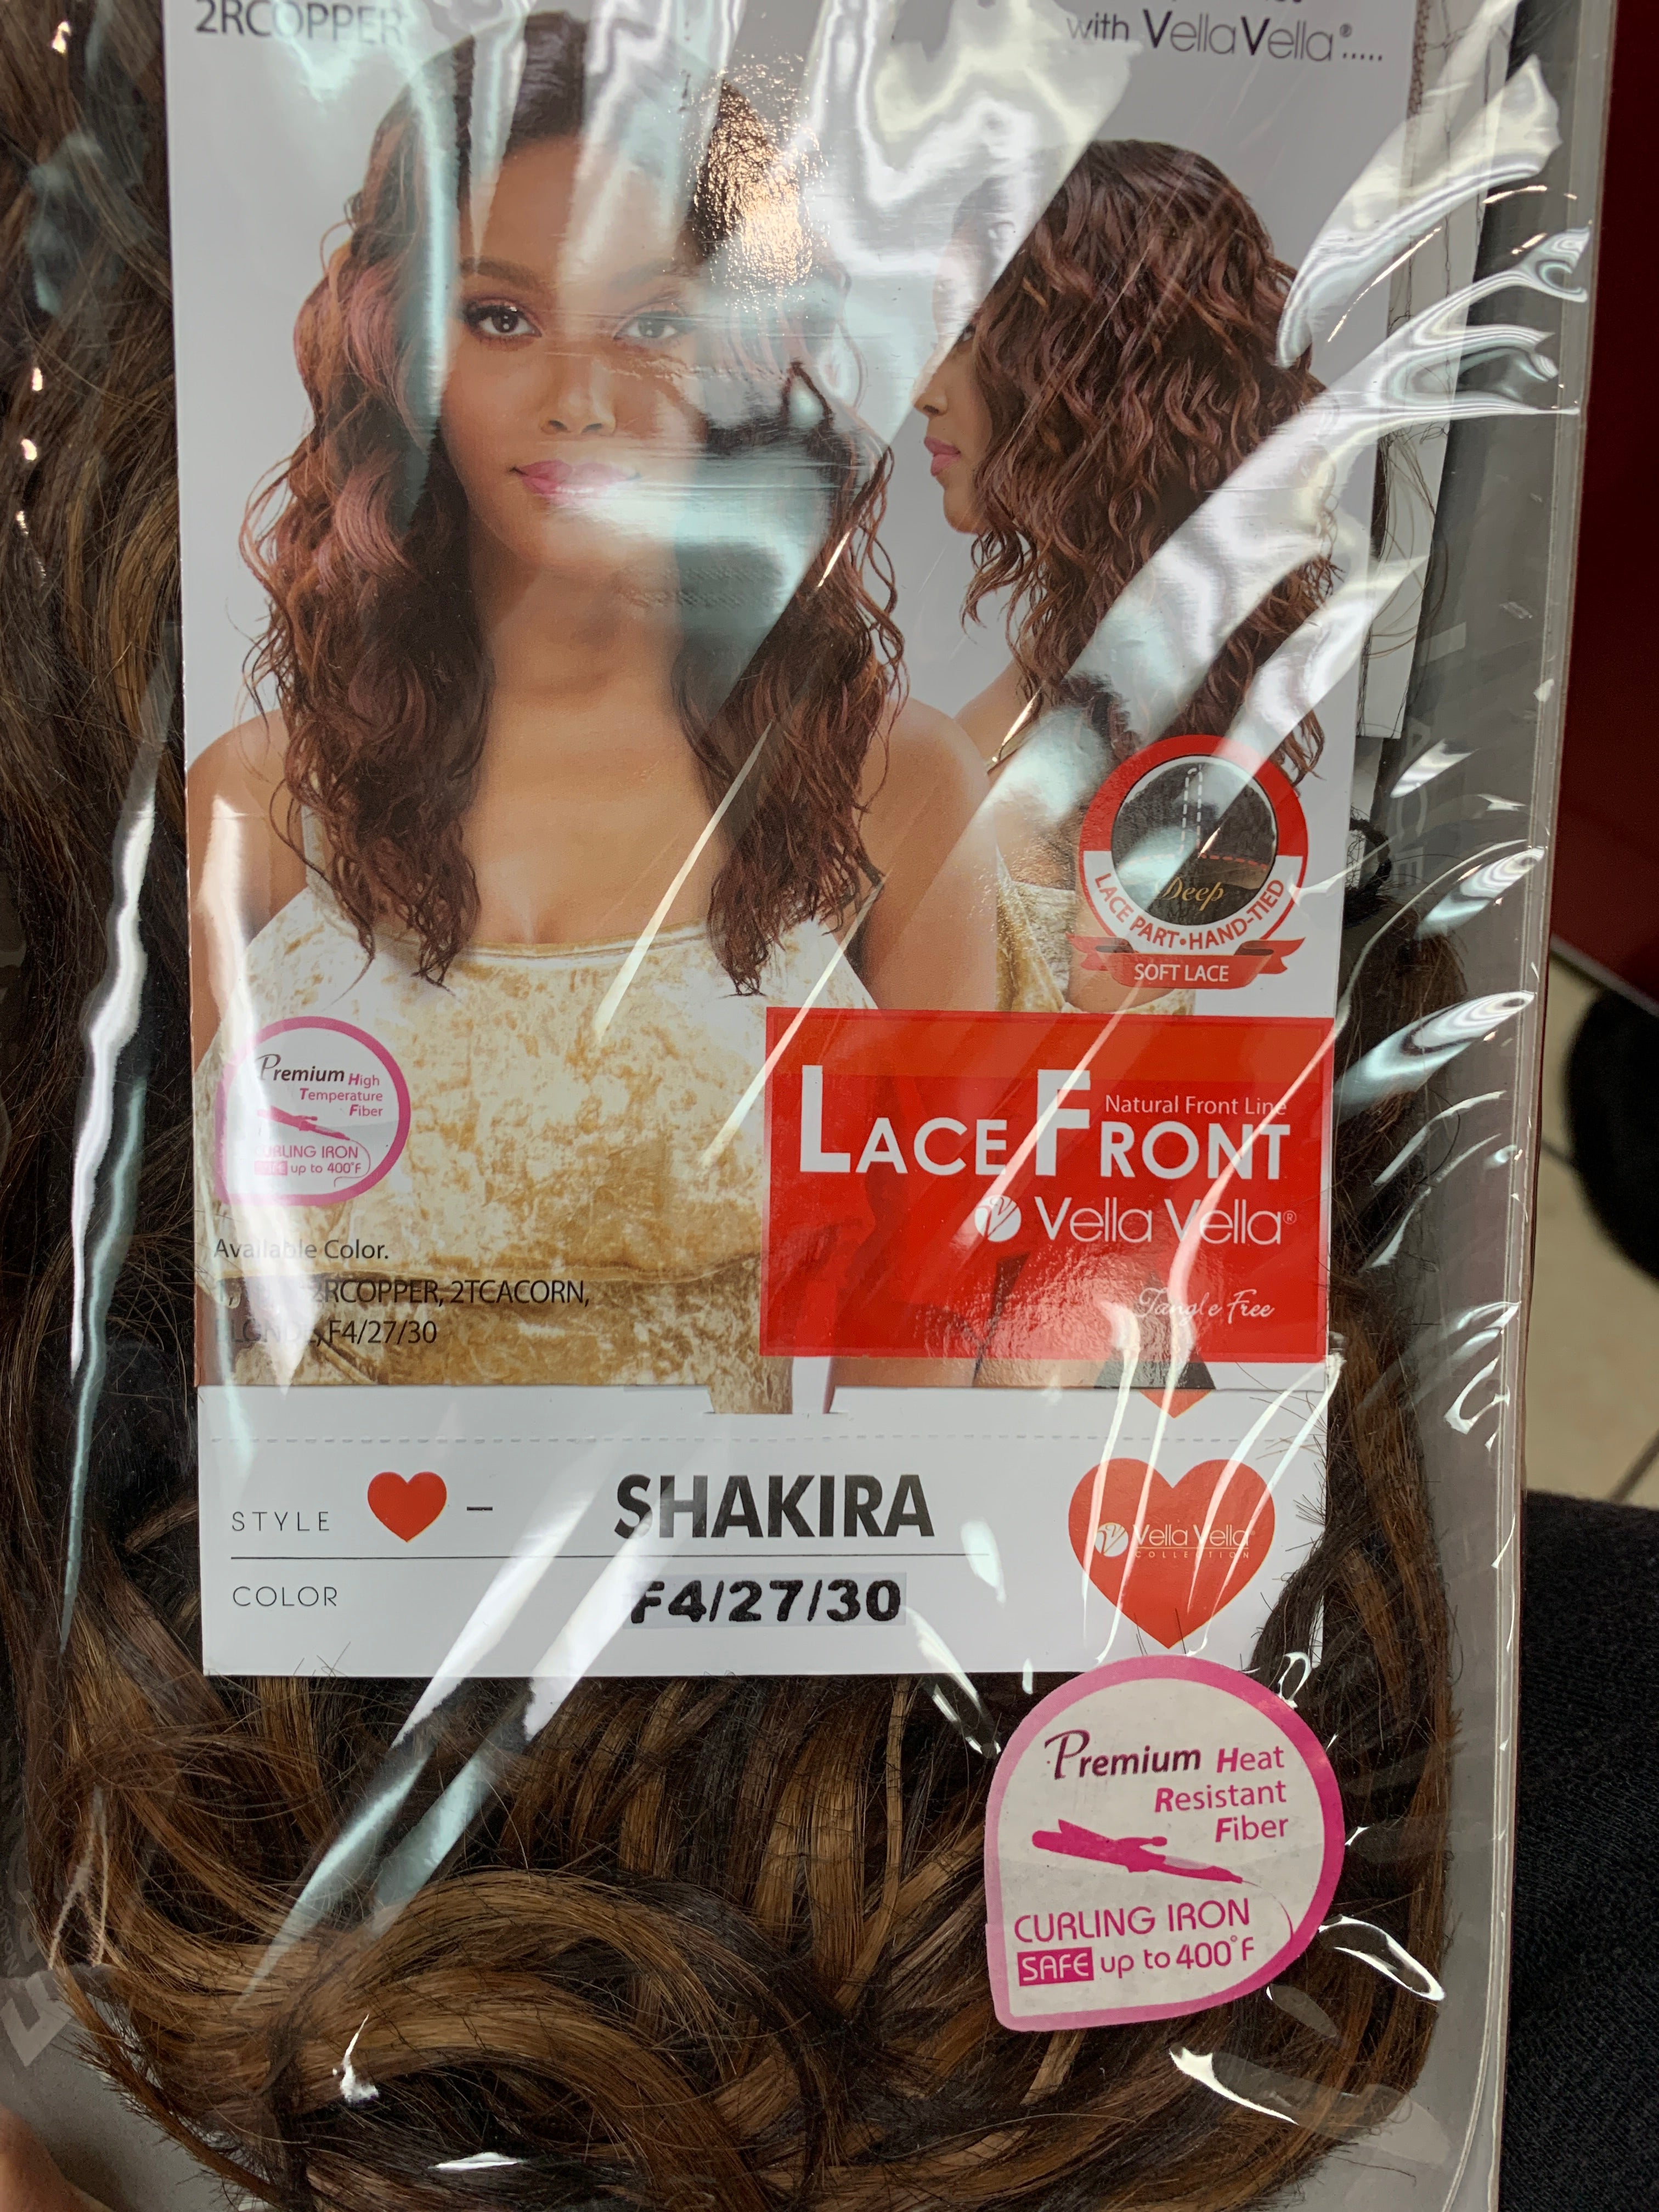 Sensual lace front Shakira